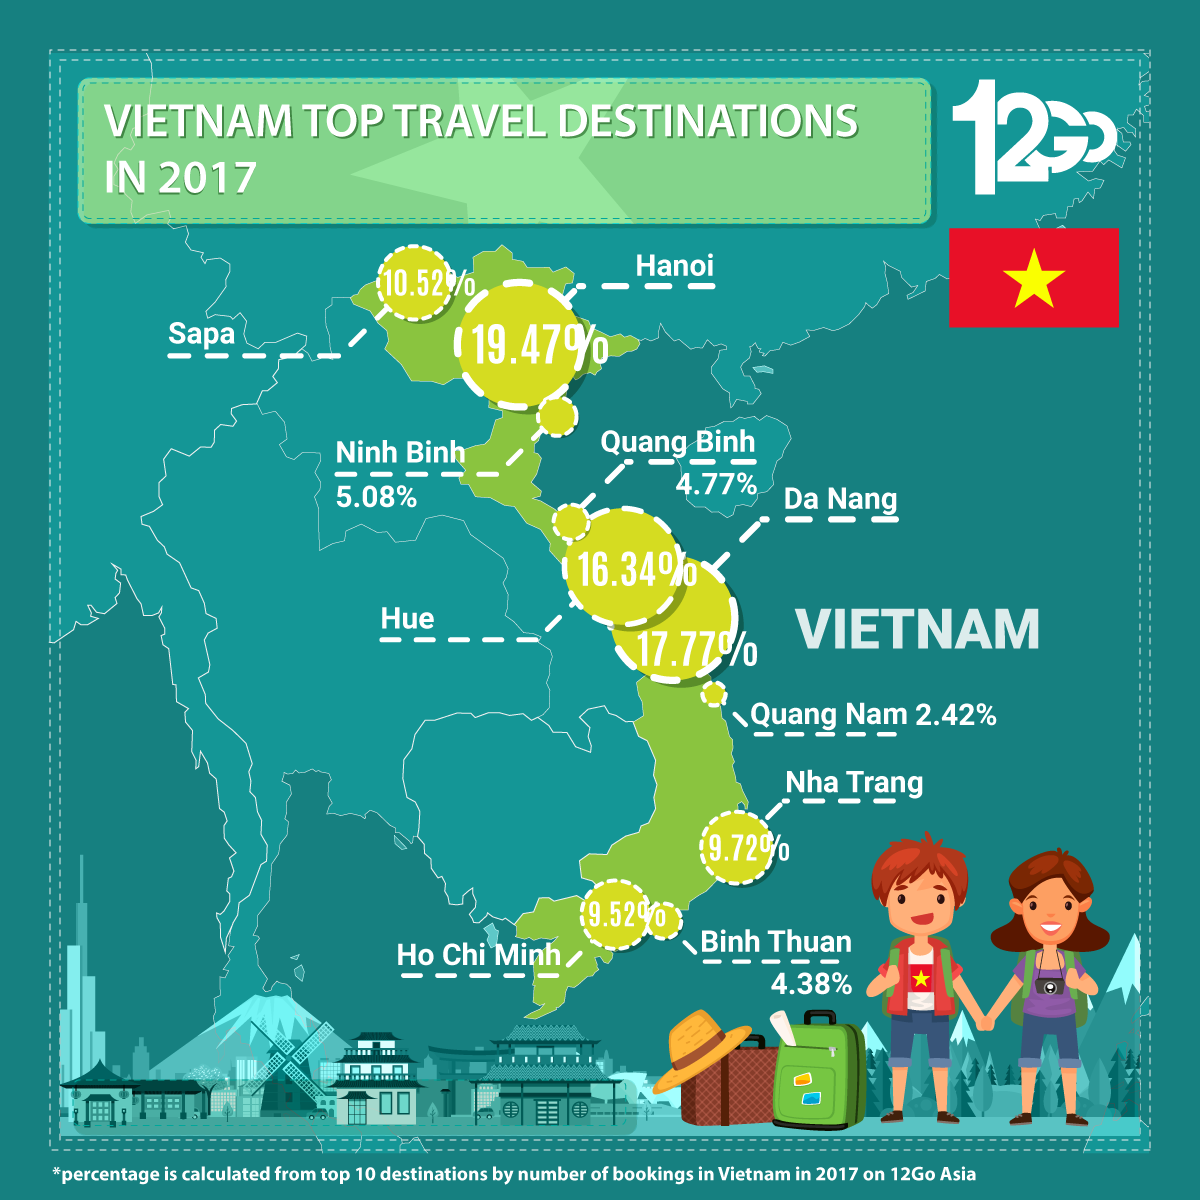 Vietnam Top Travel Destinations in 2017 Infographic